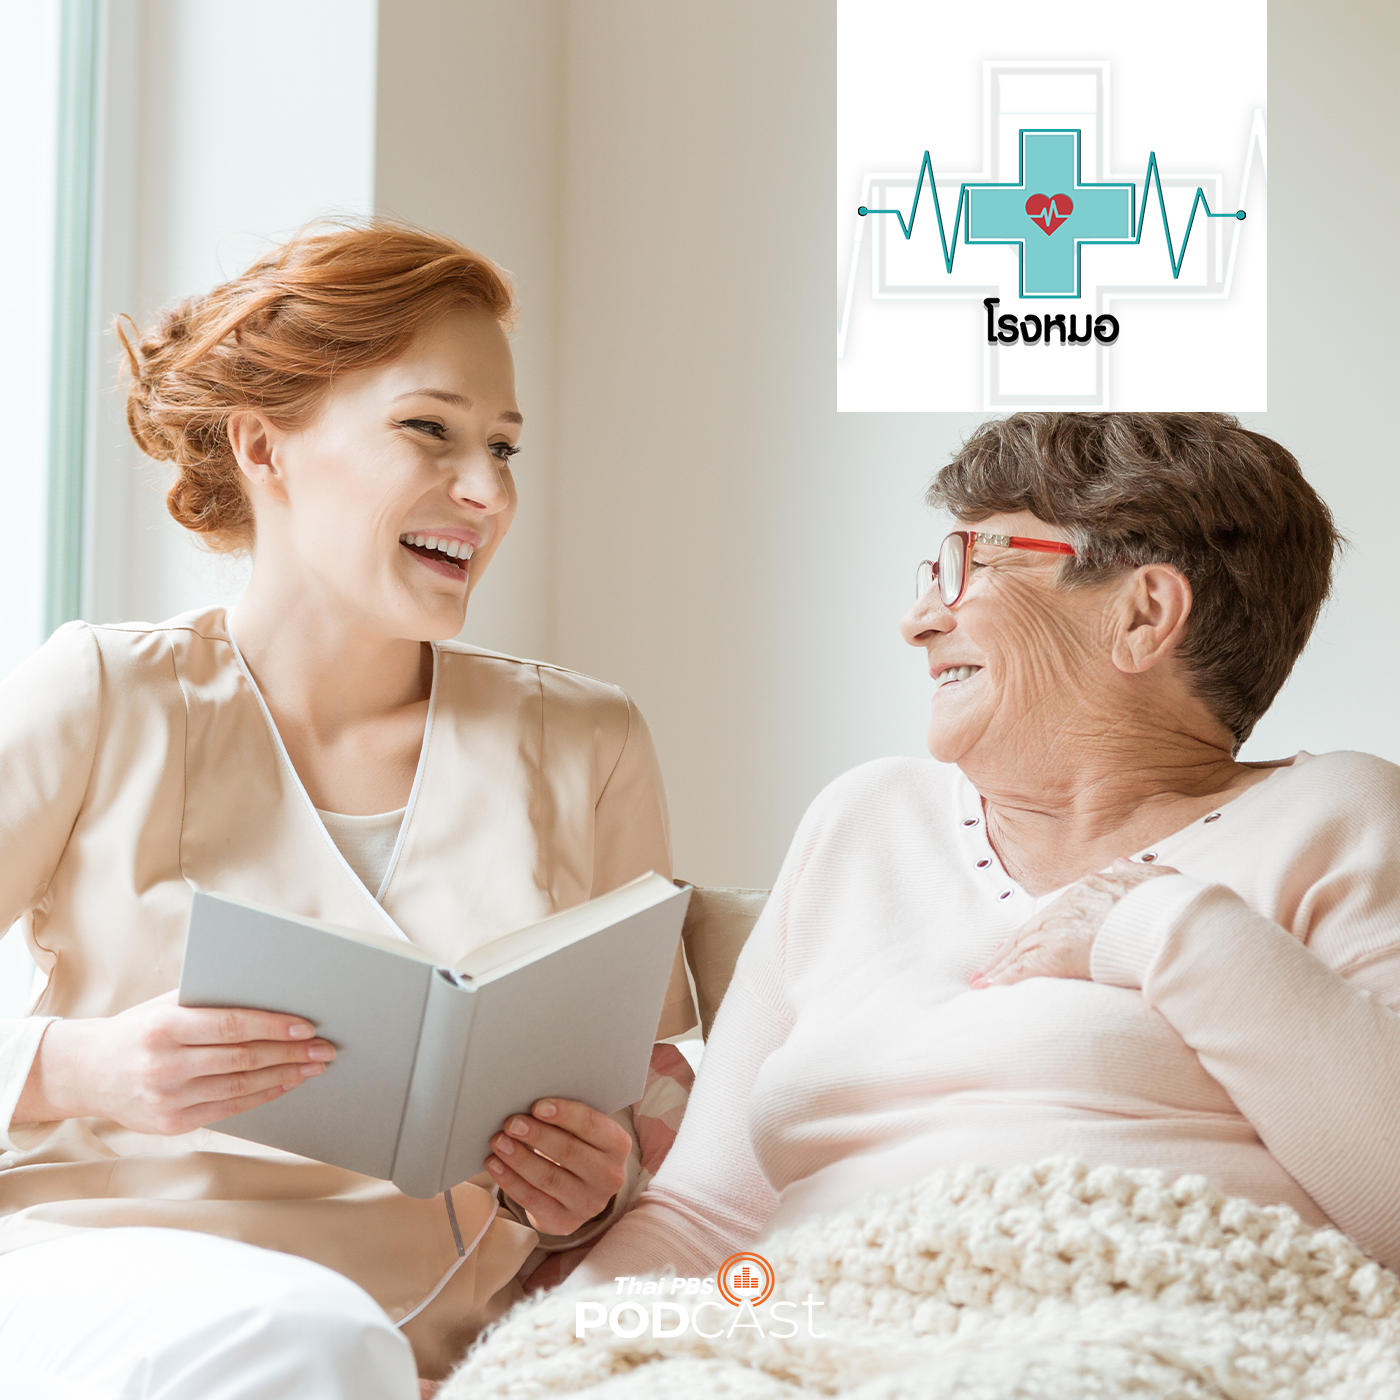 โรงหมอ EP. 606: วิธีเลือกผู้ดูแลและสถานรับดูแลผู้สูงอายุ (2)